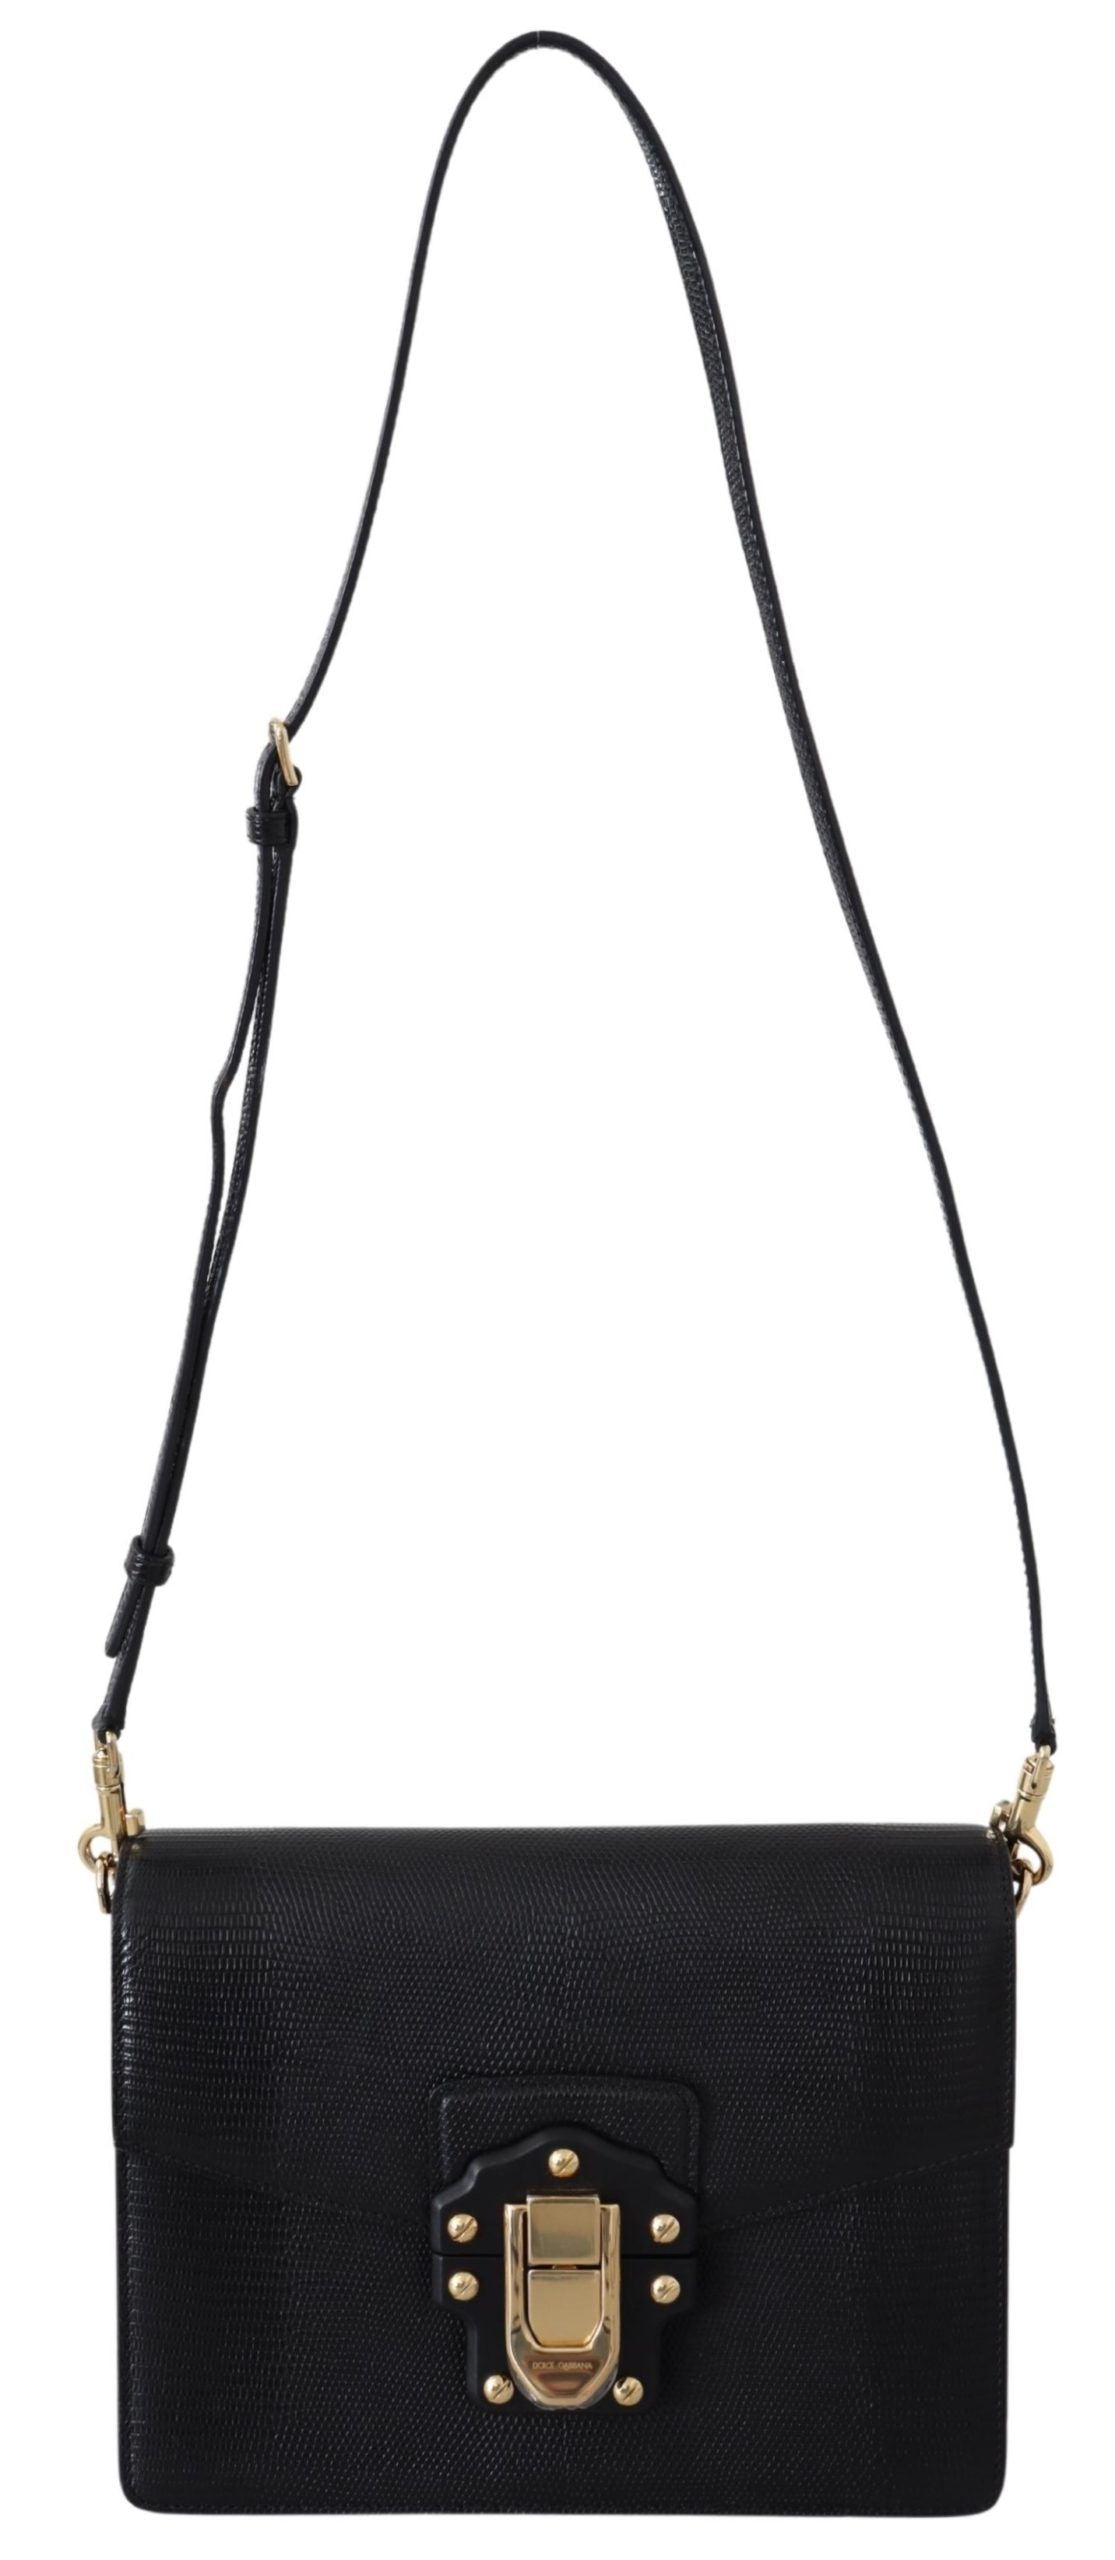 Elegant Black Leather Lucia Shoulder Bag